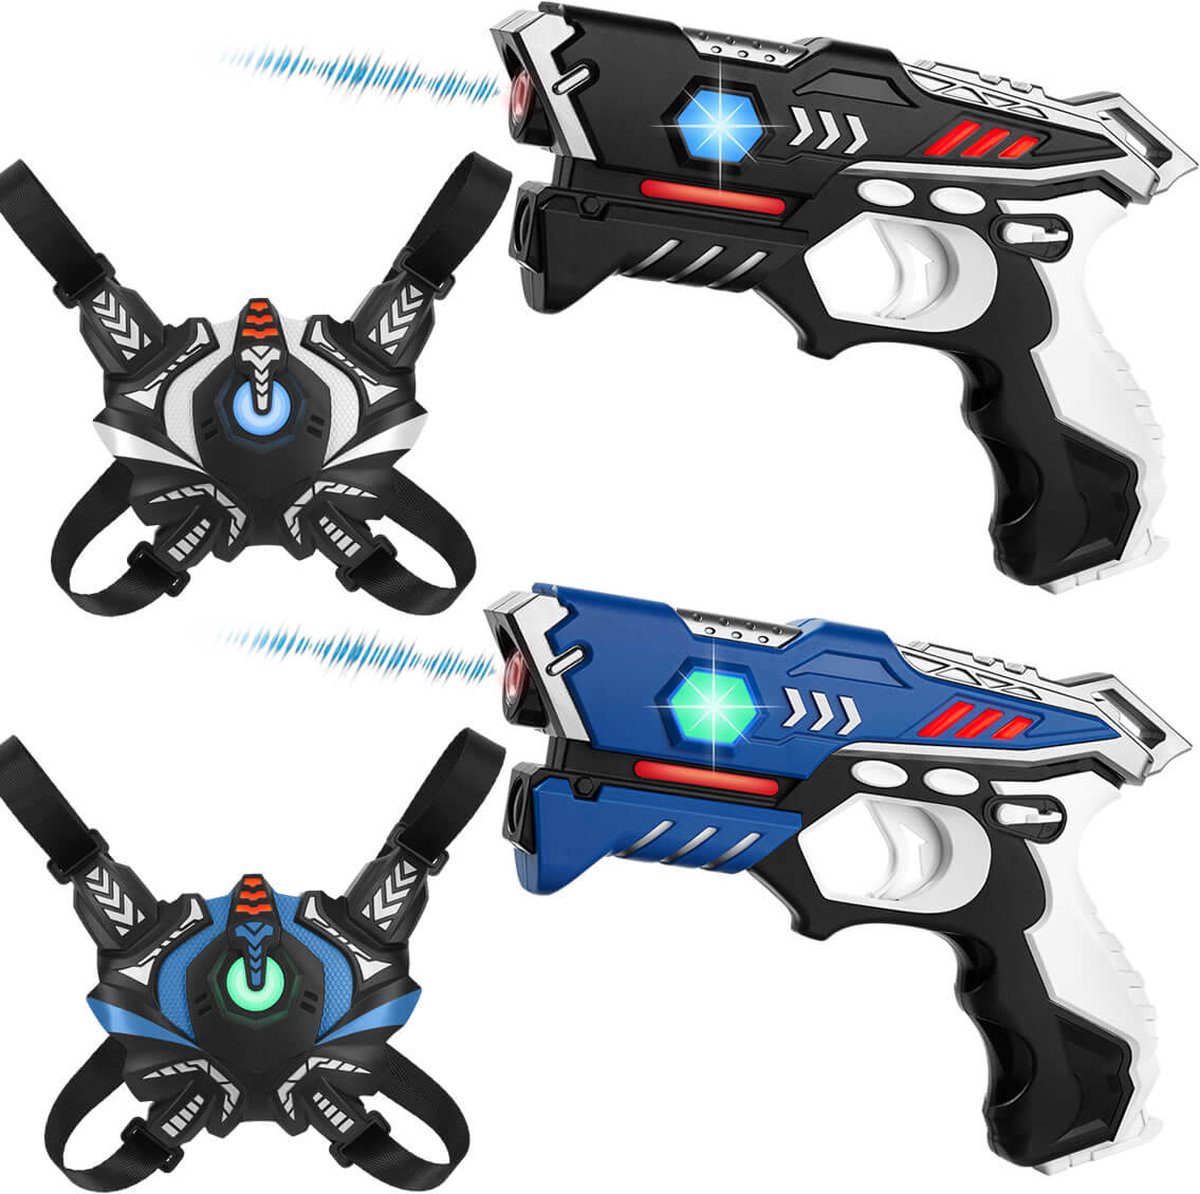 2 laserguns + 2 lasergame vesten - KidsTag lasergame set voor kinderen - Met unieke Vest Only optie!